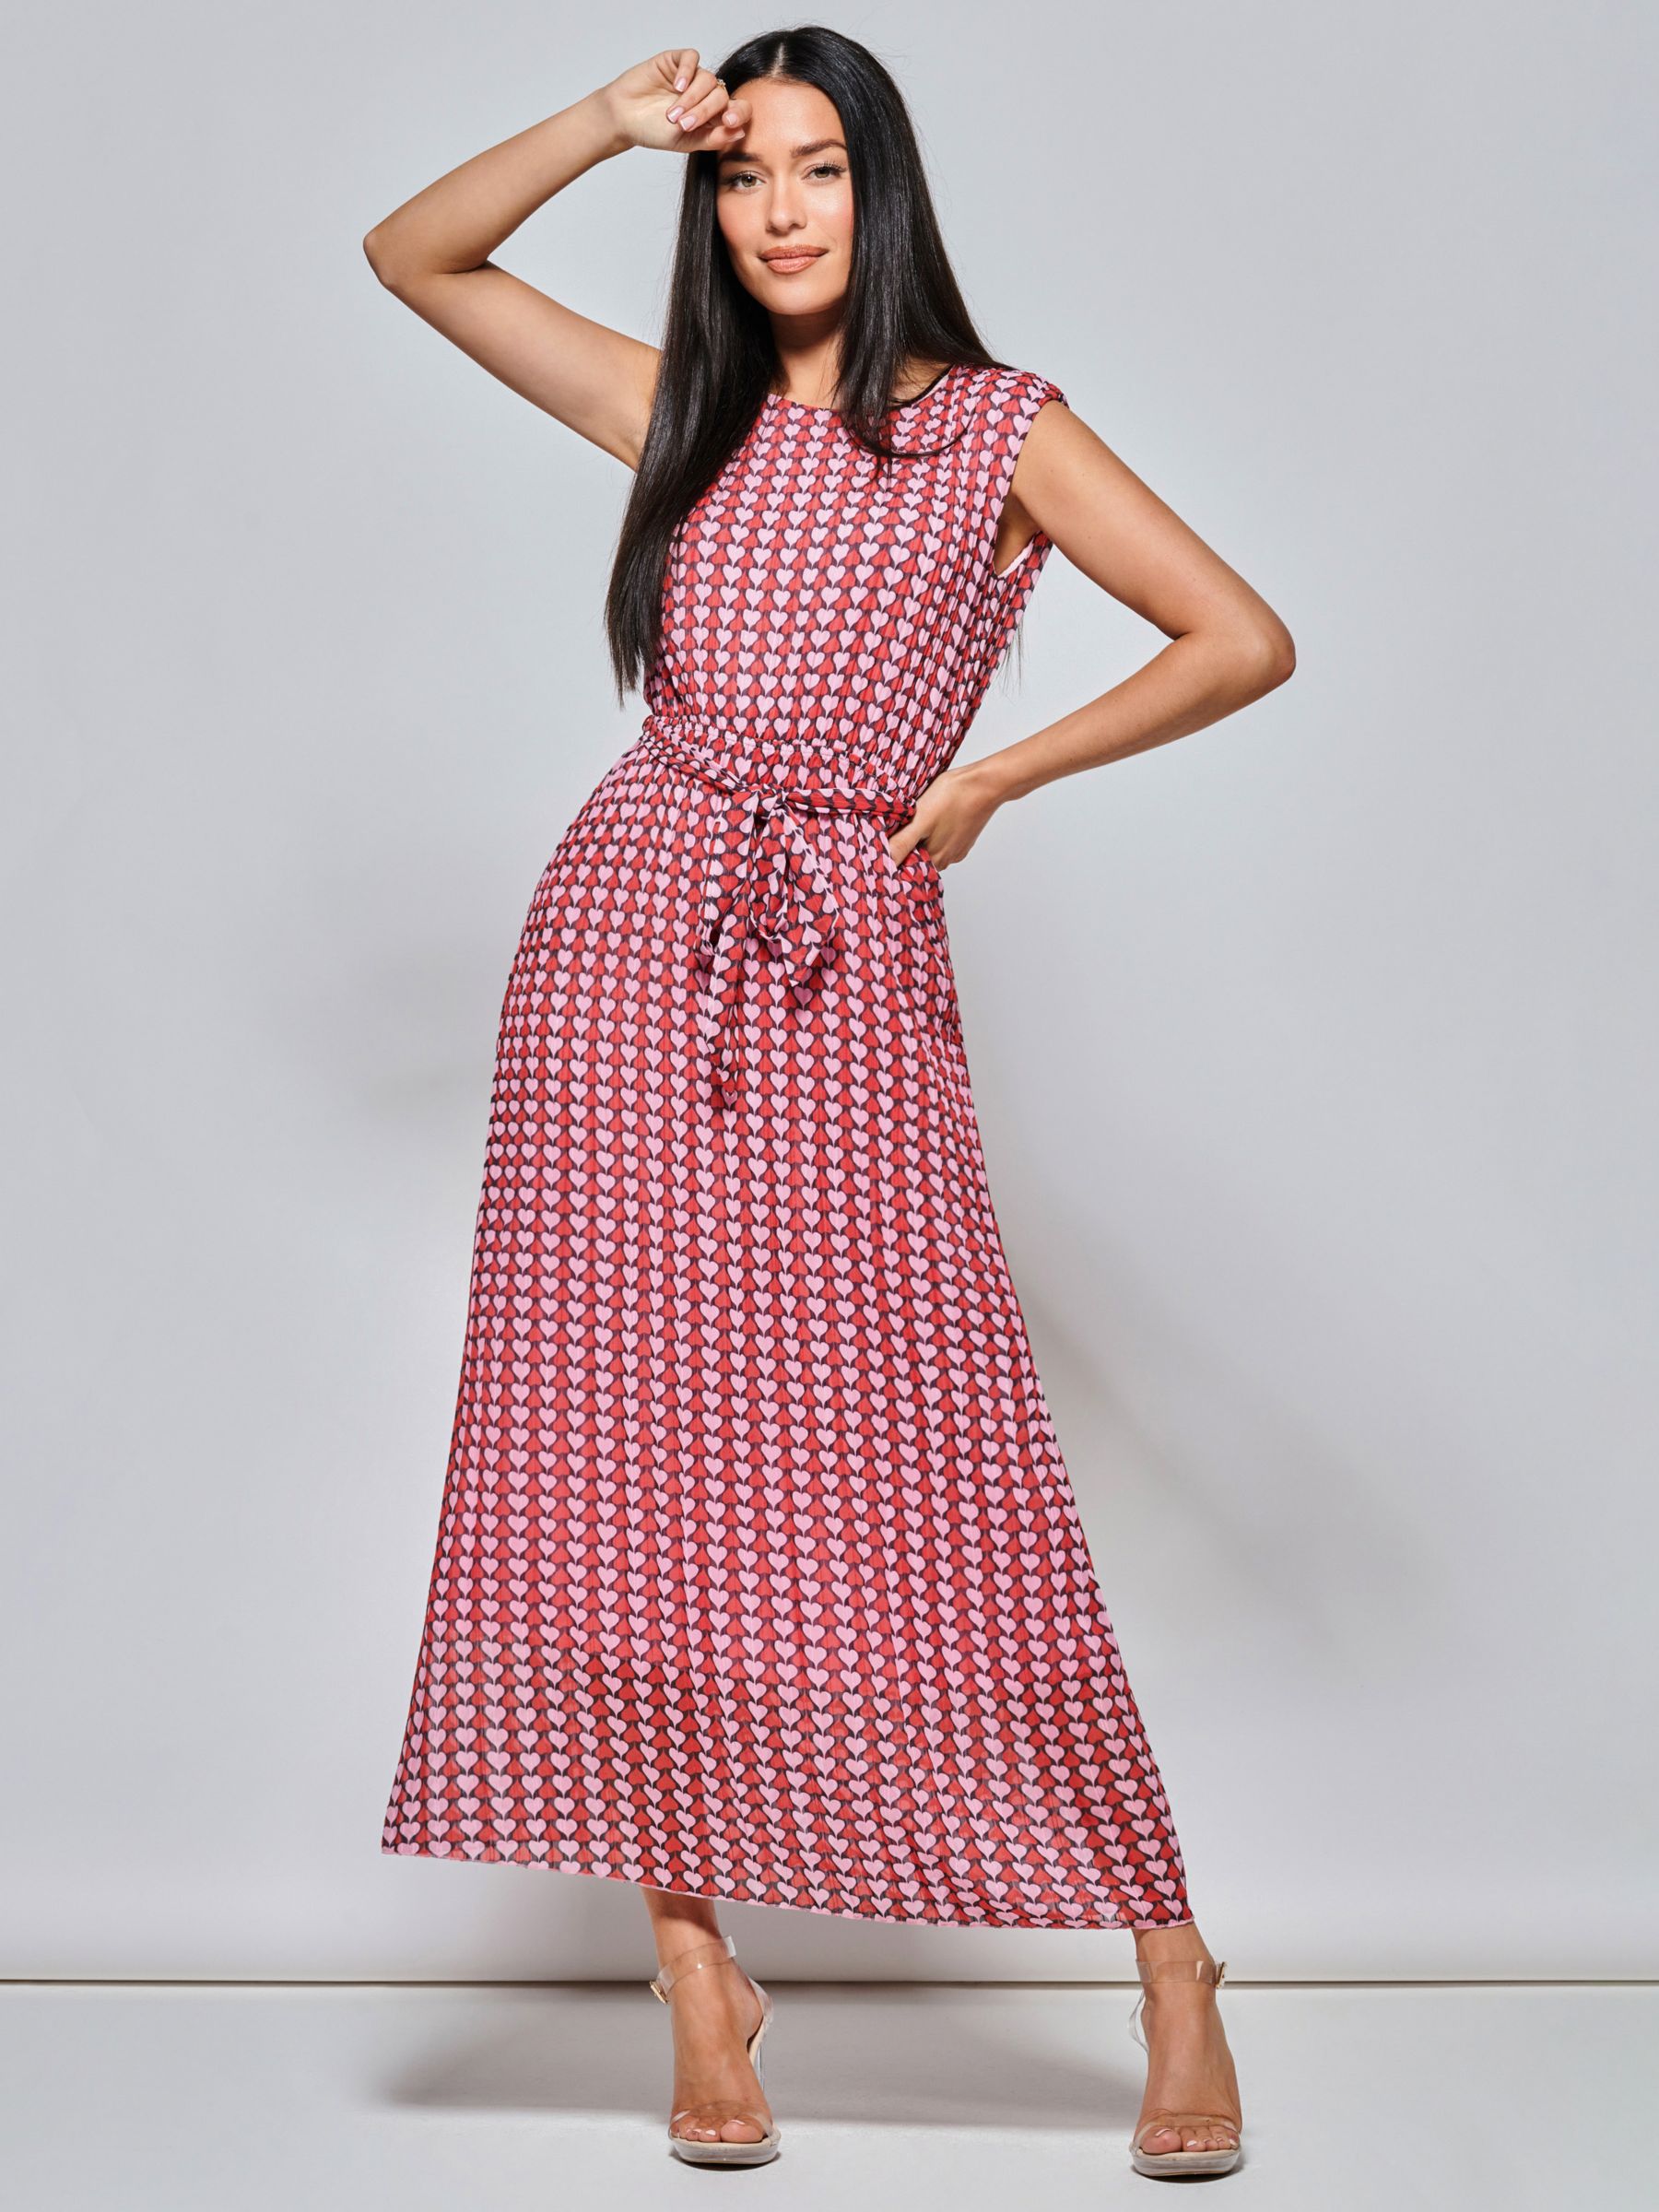 Jolie Moi Heart Print Tie Waist Maxi Dress, Pink/Multi, 8